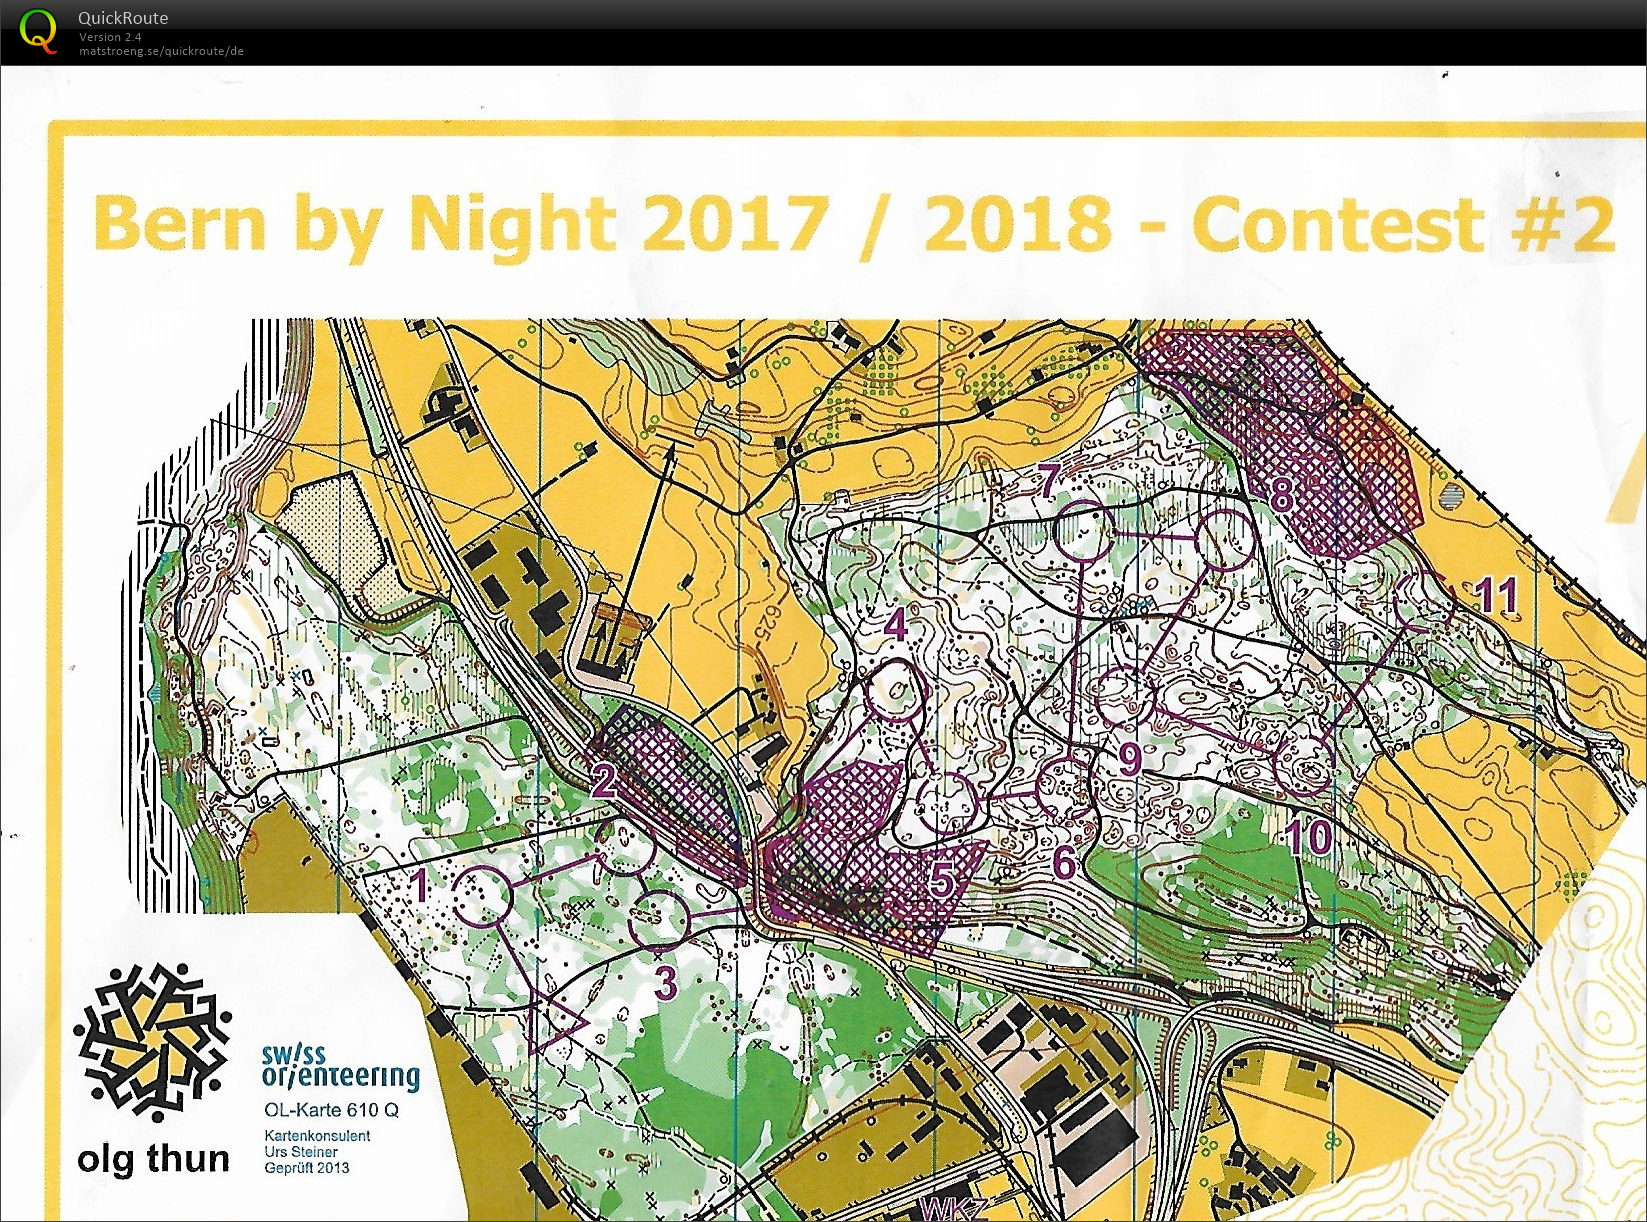 Bern by night #2 (08.12.2017)